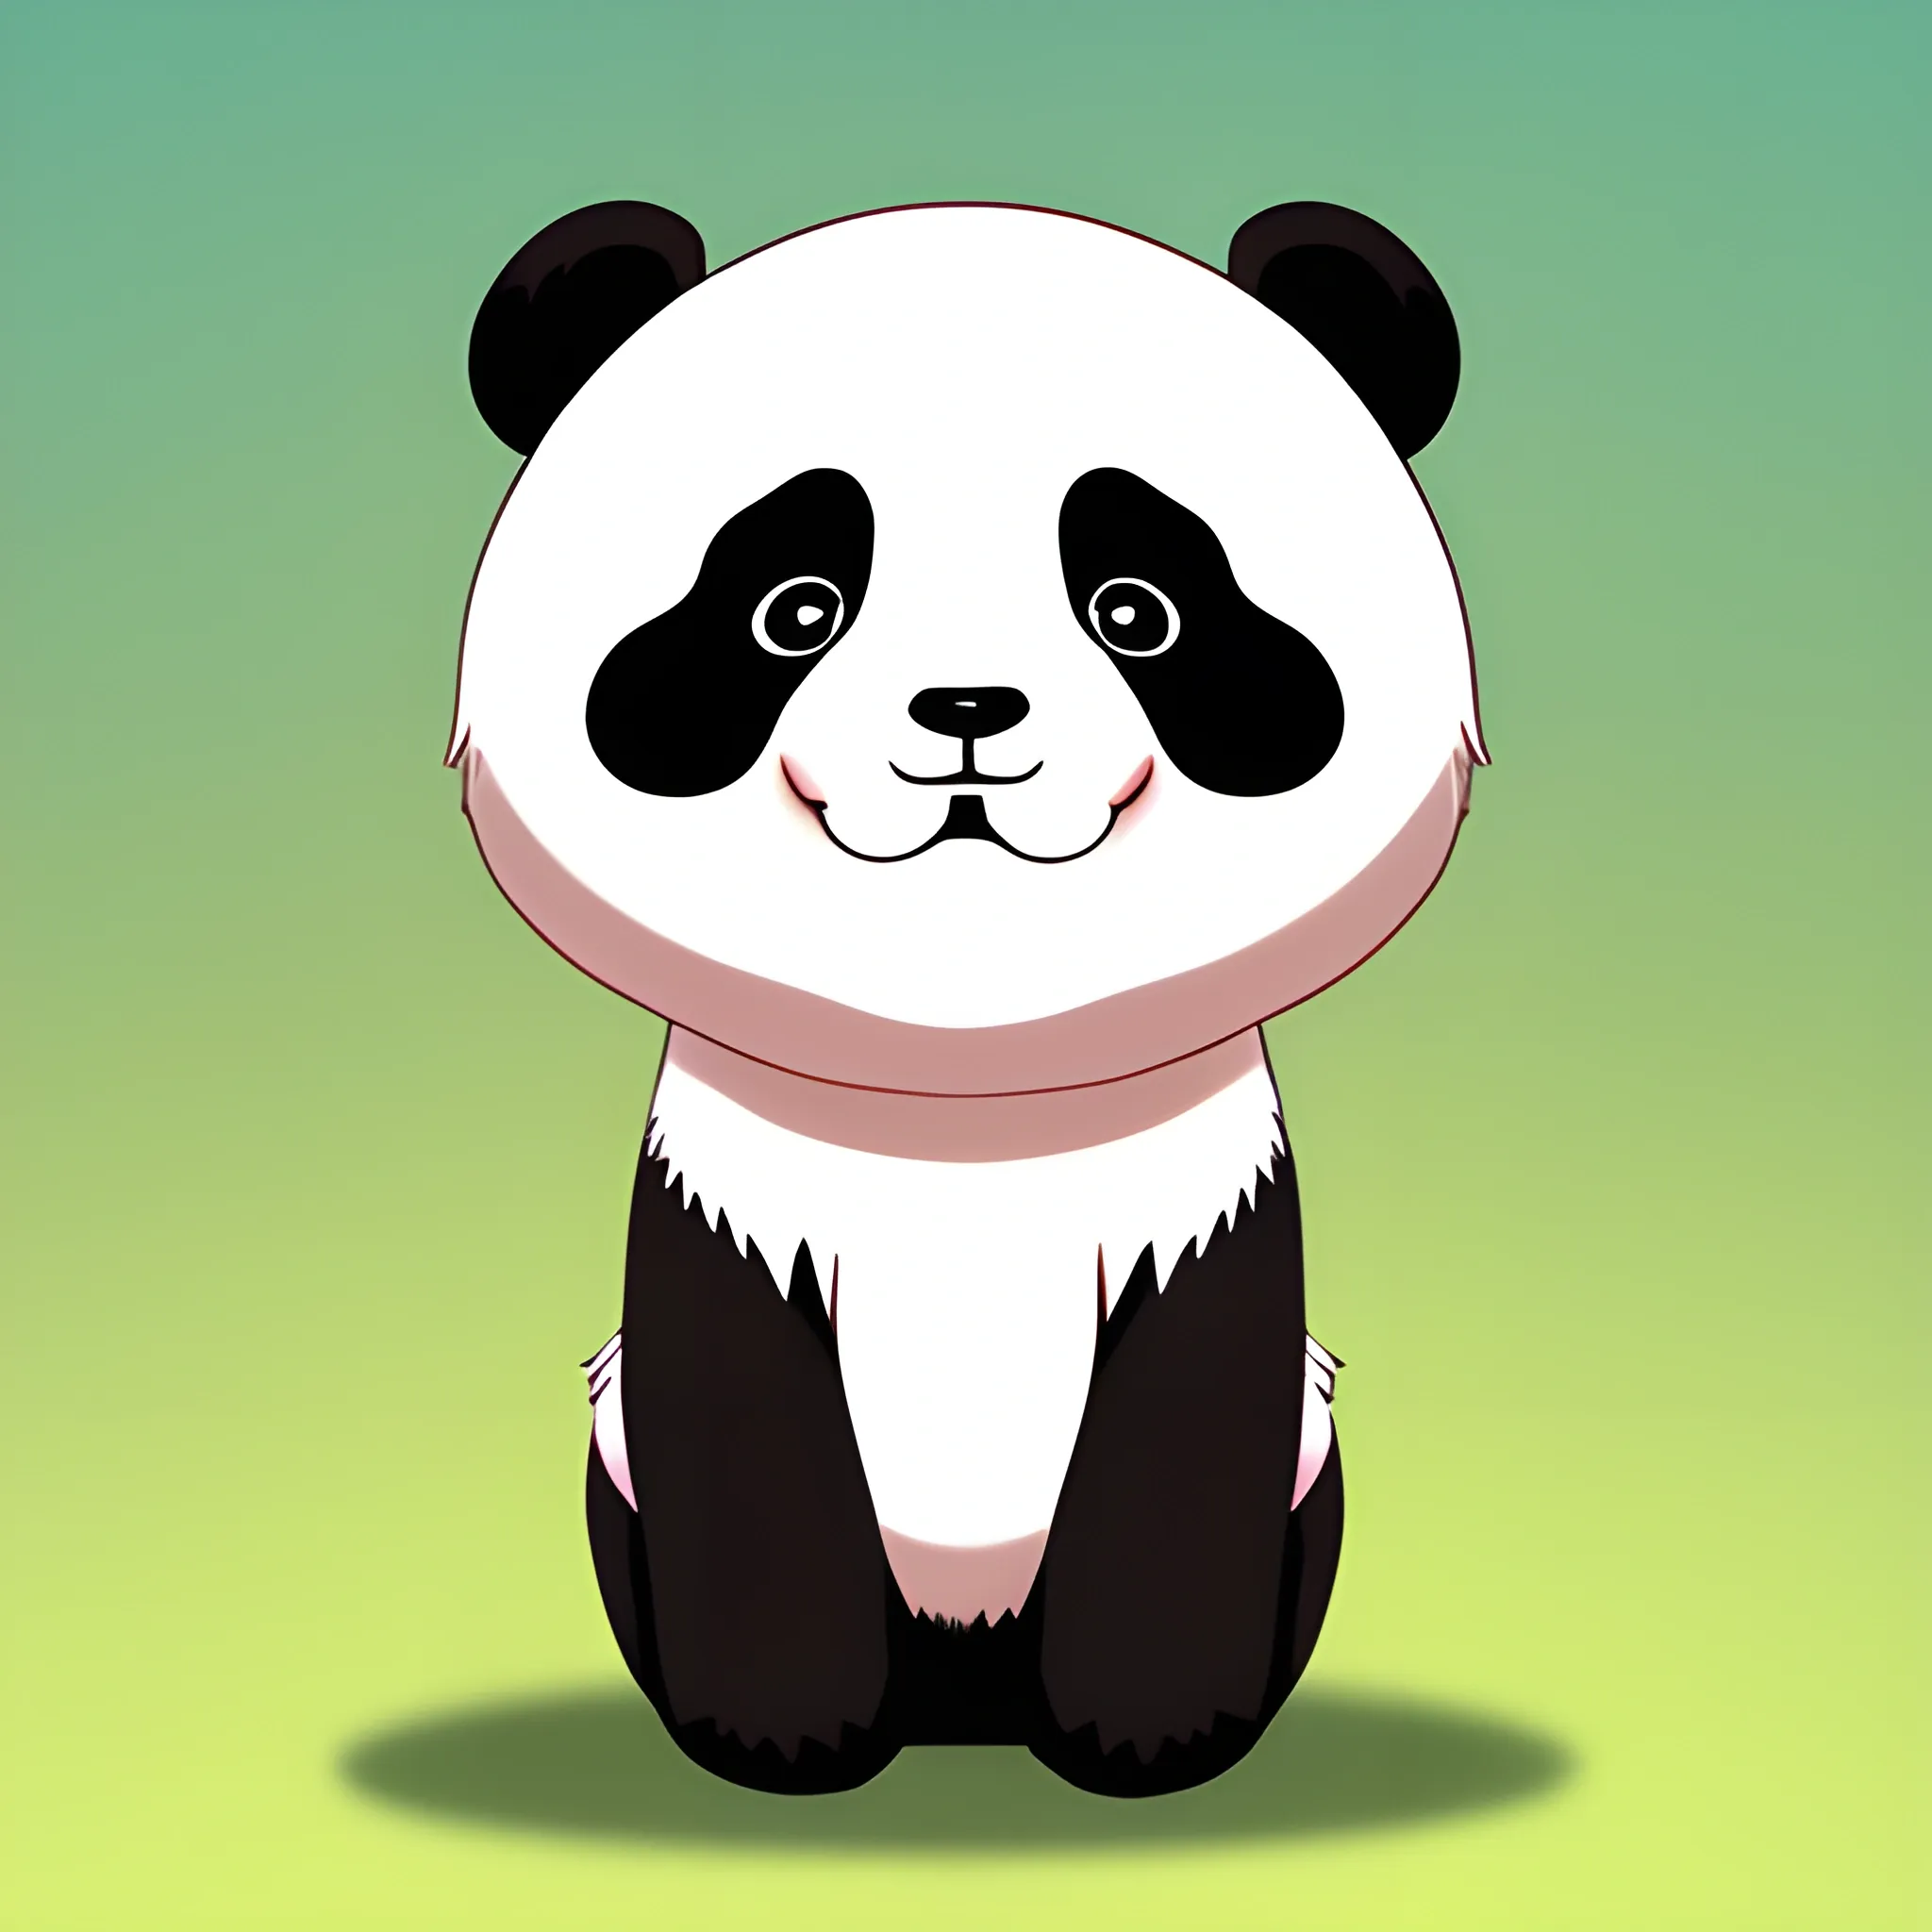 47+] Cute Anime Panda Wallpaper - WallpaperSafari